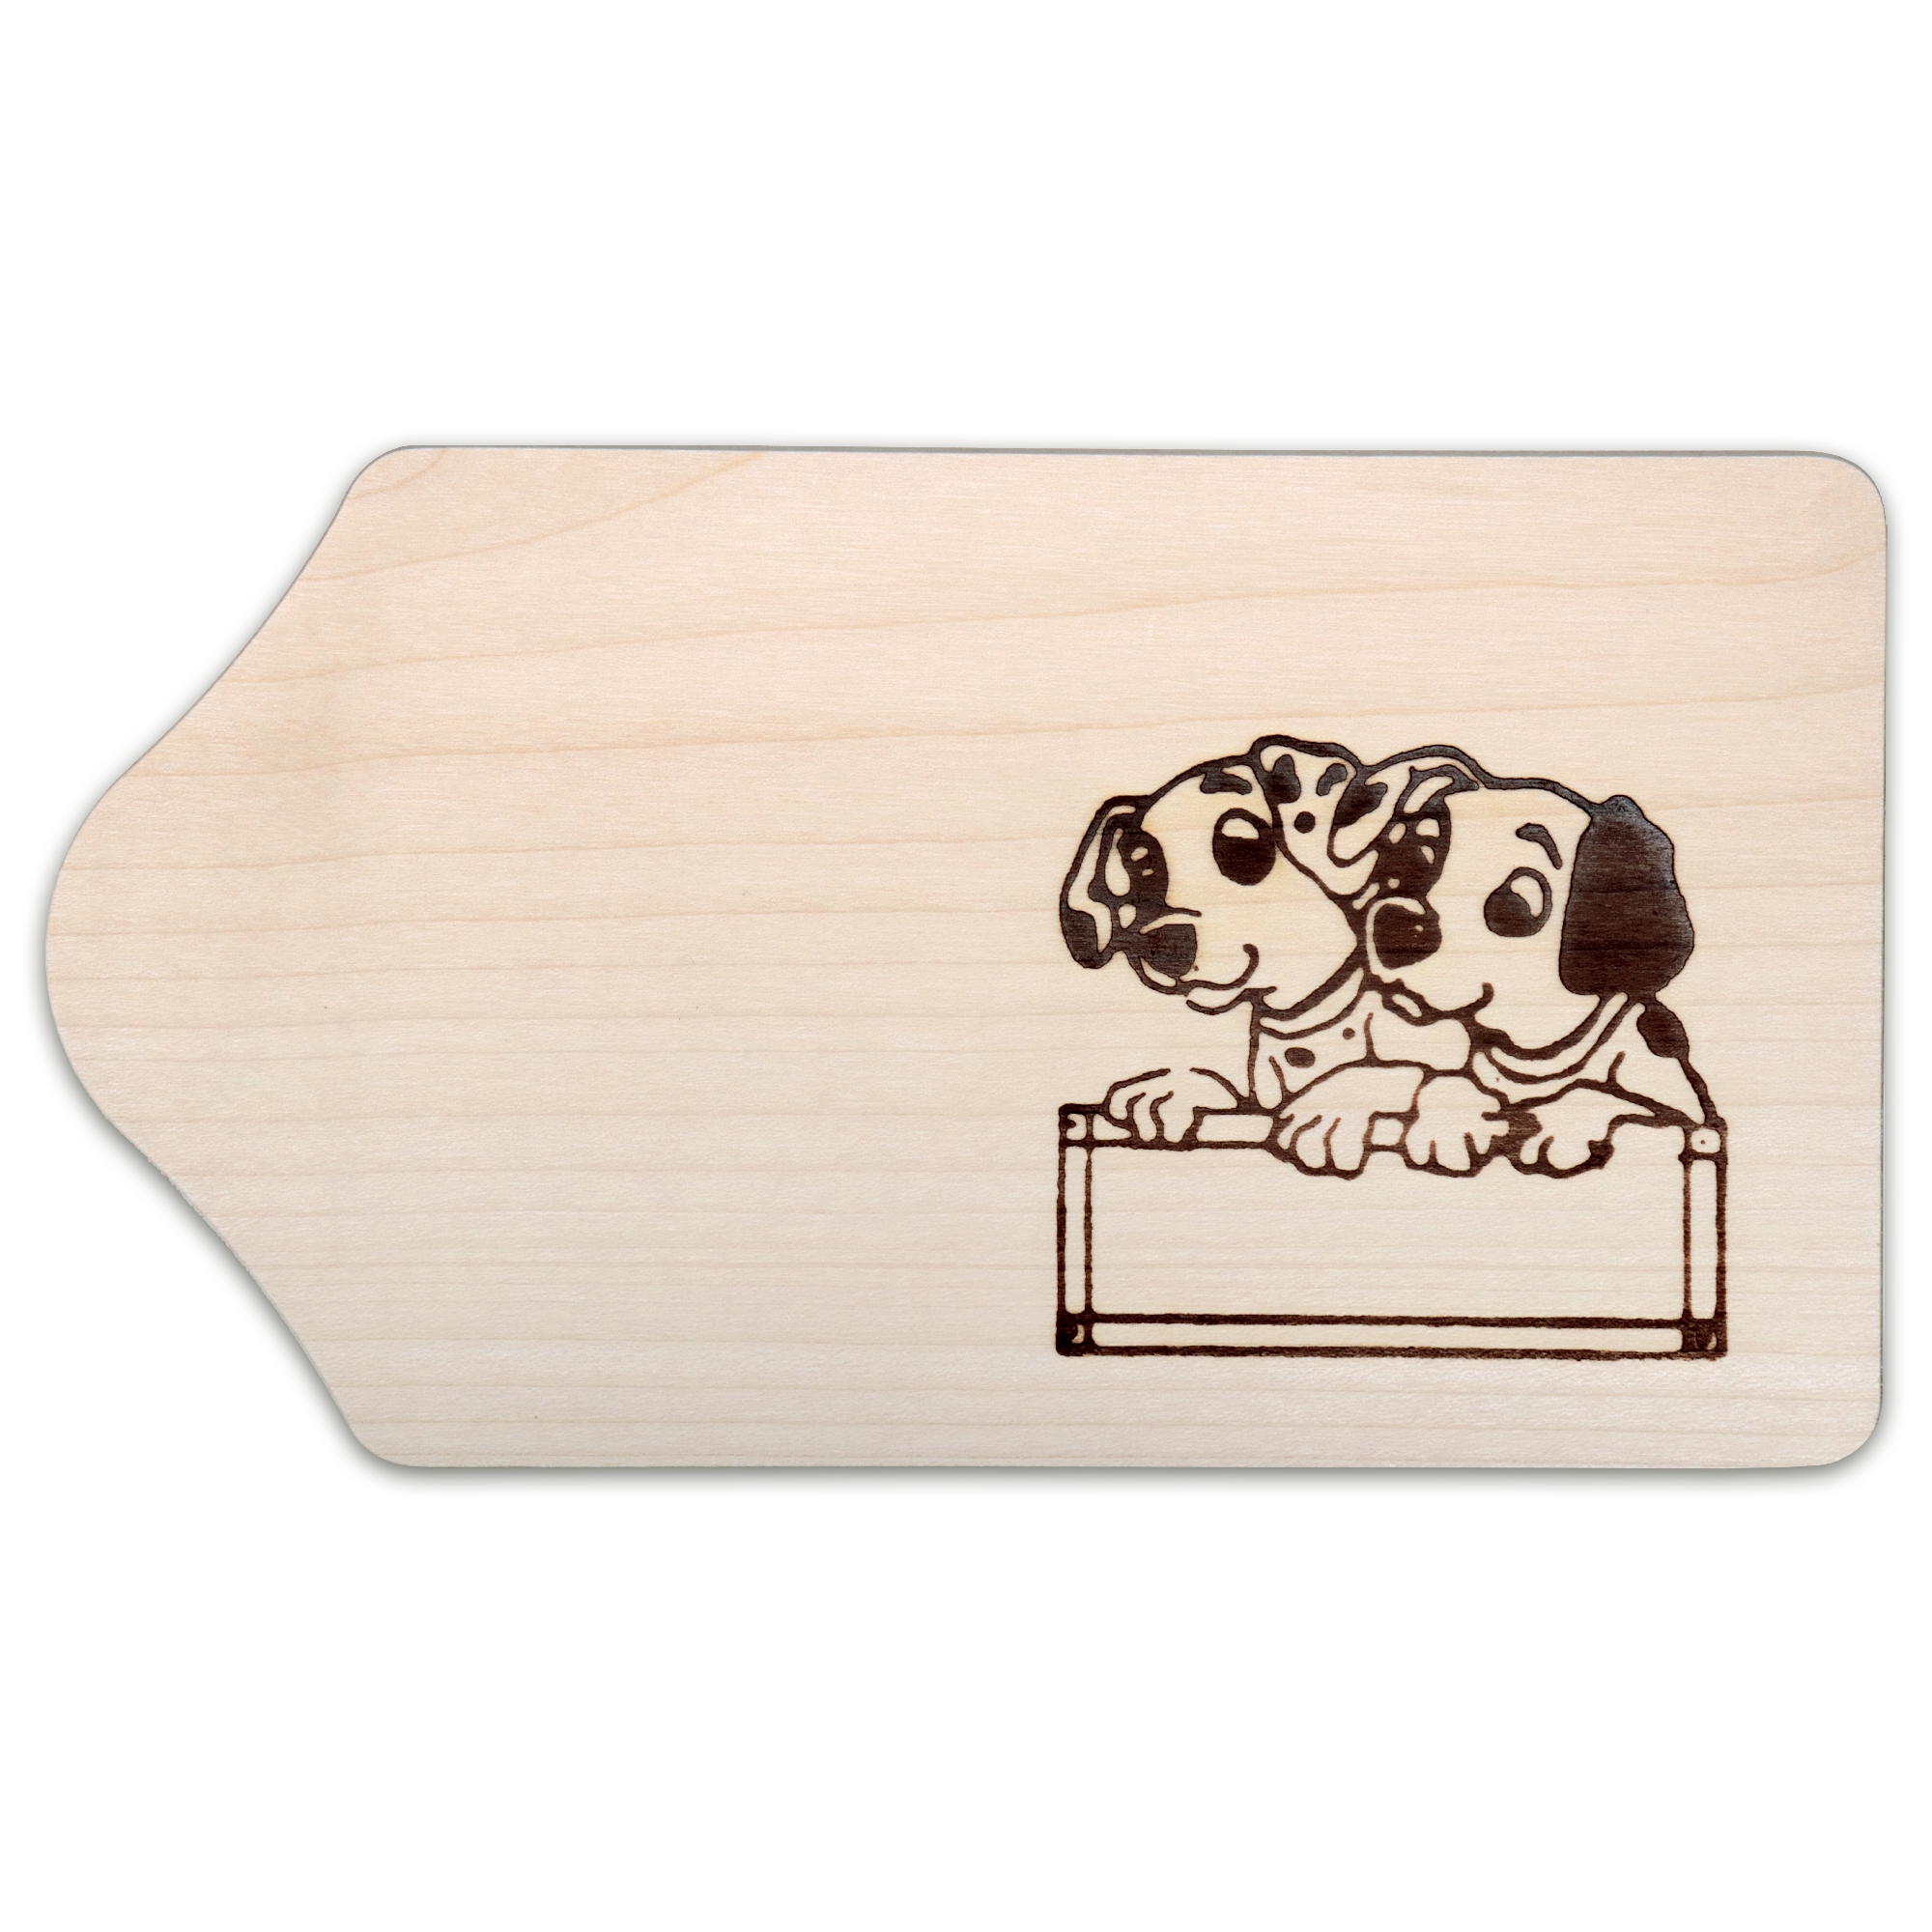 Culinaris - Breakfast board - maple wood - dogs